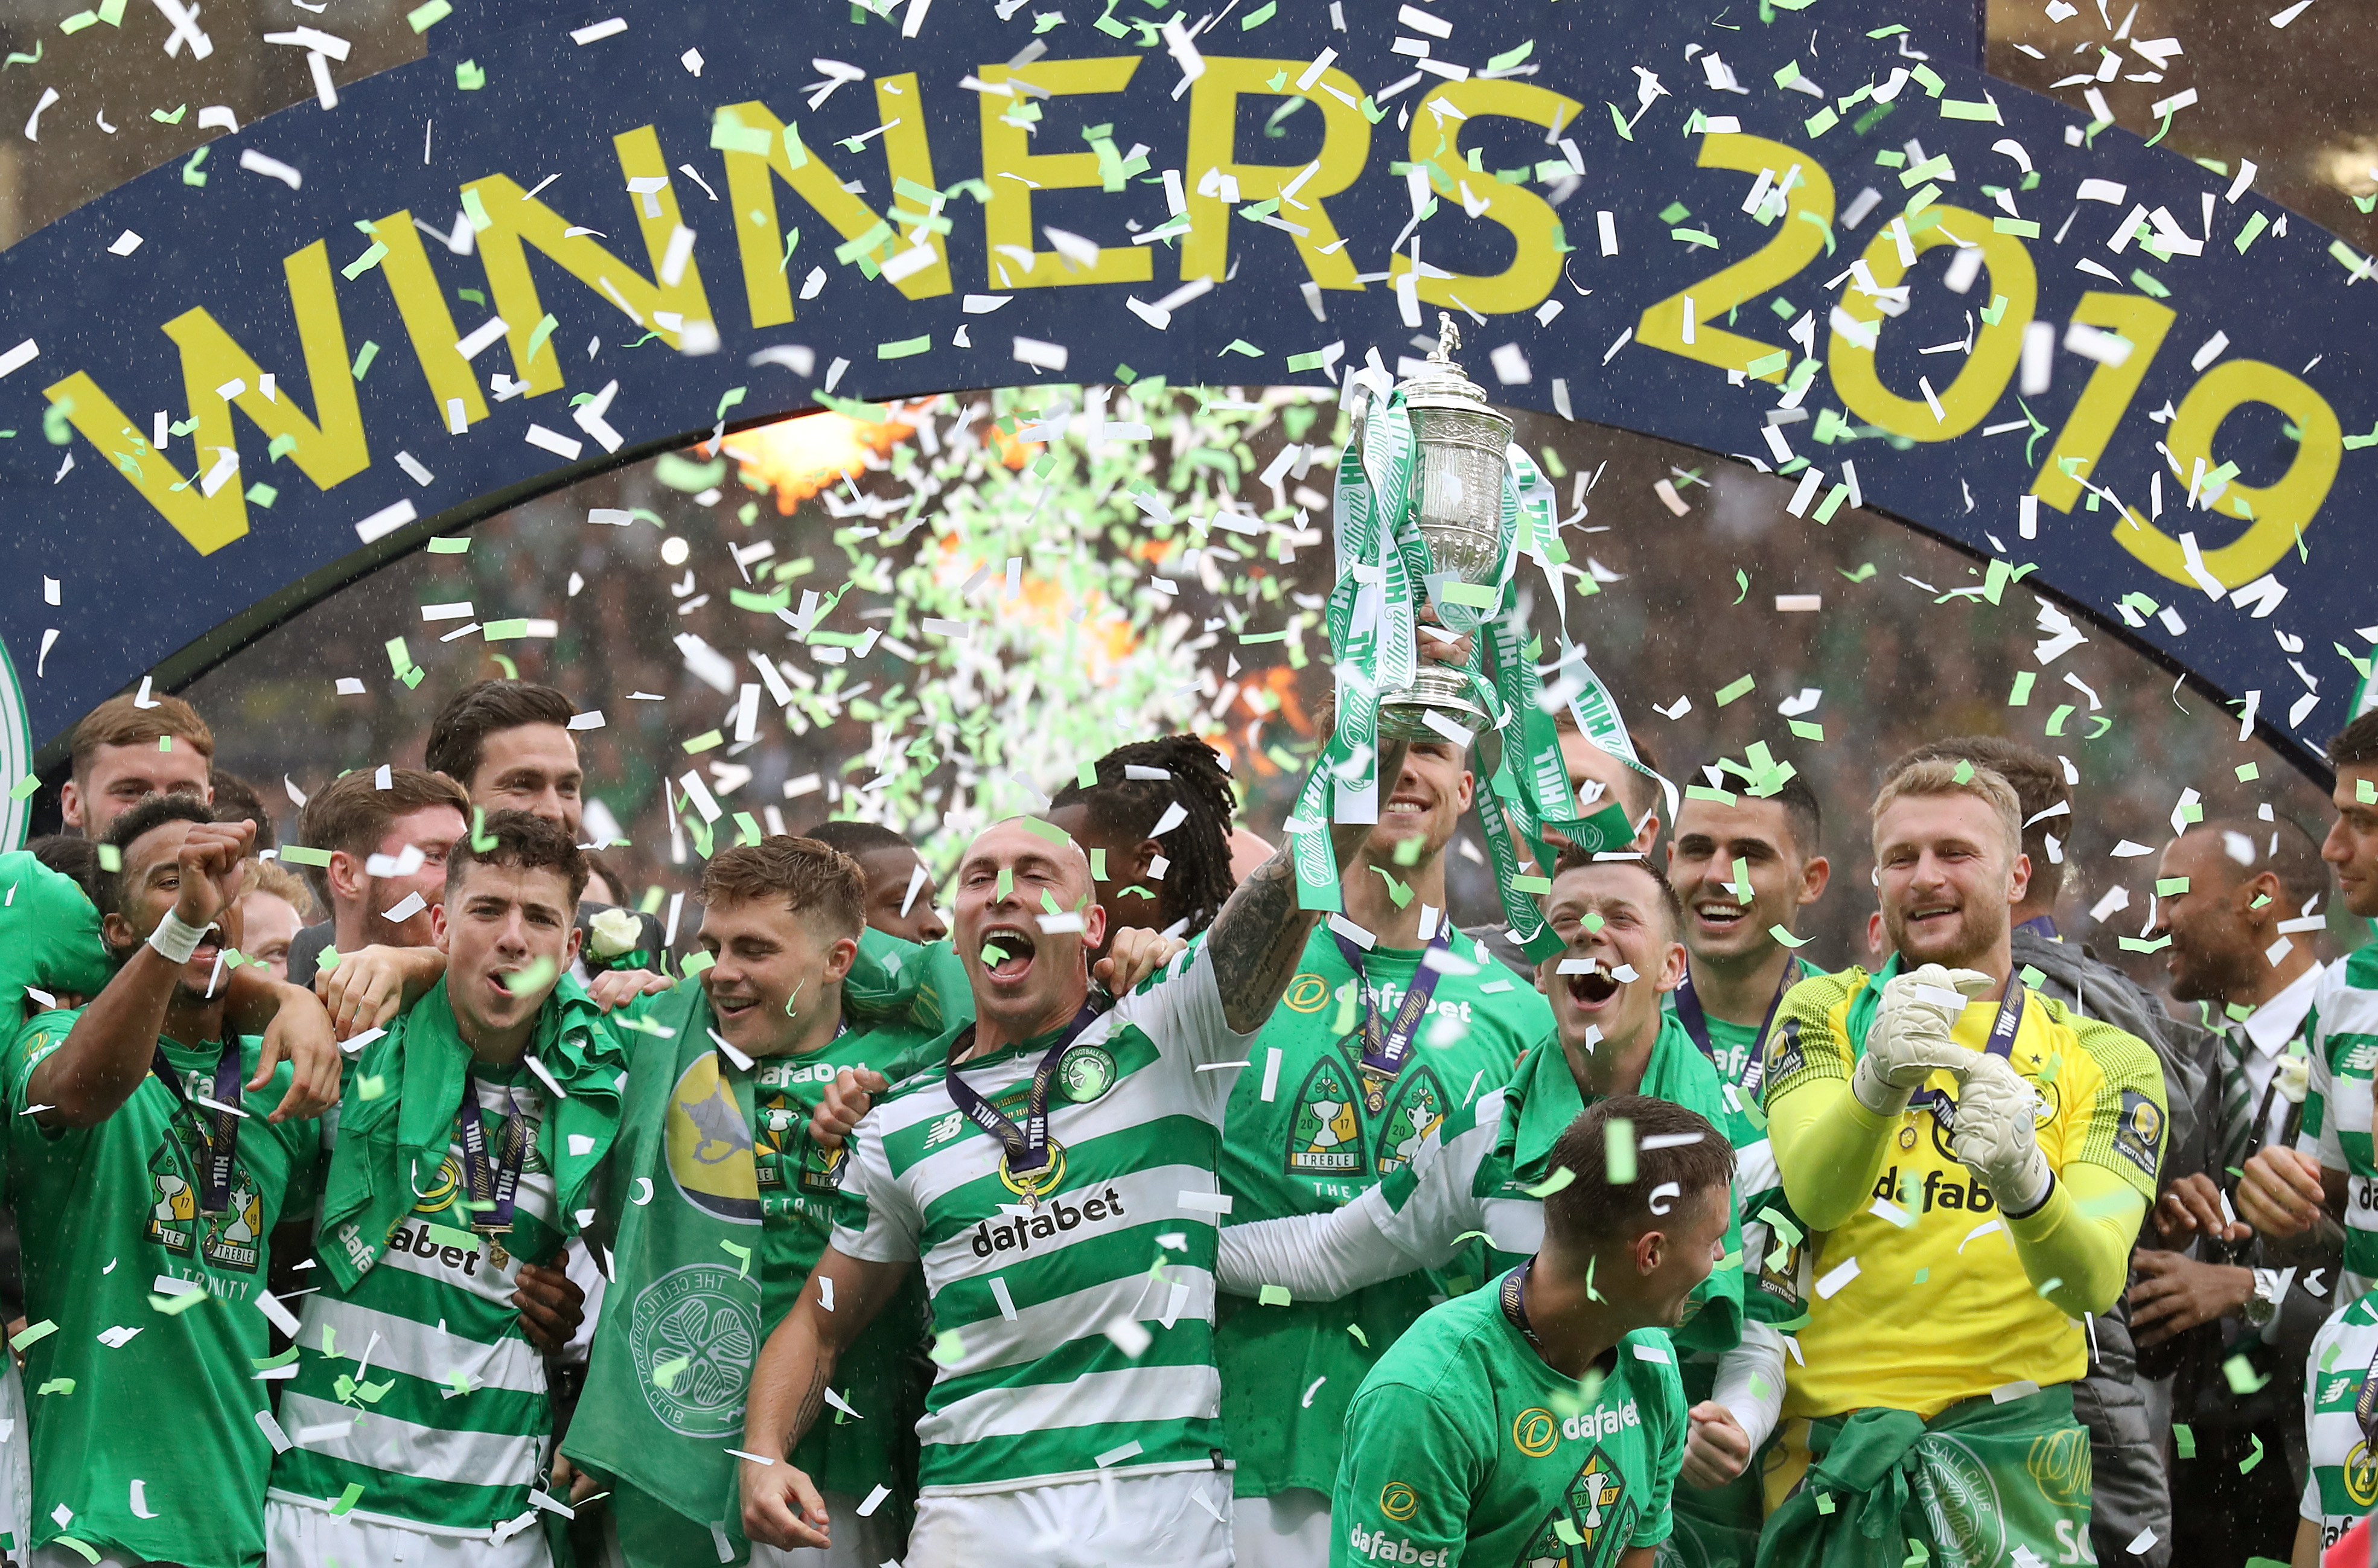 O Celtic é uma das quatro equipes ainda envolvidas na Taça da Escócia 2019-20